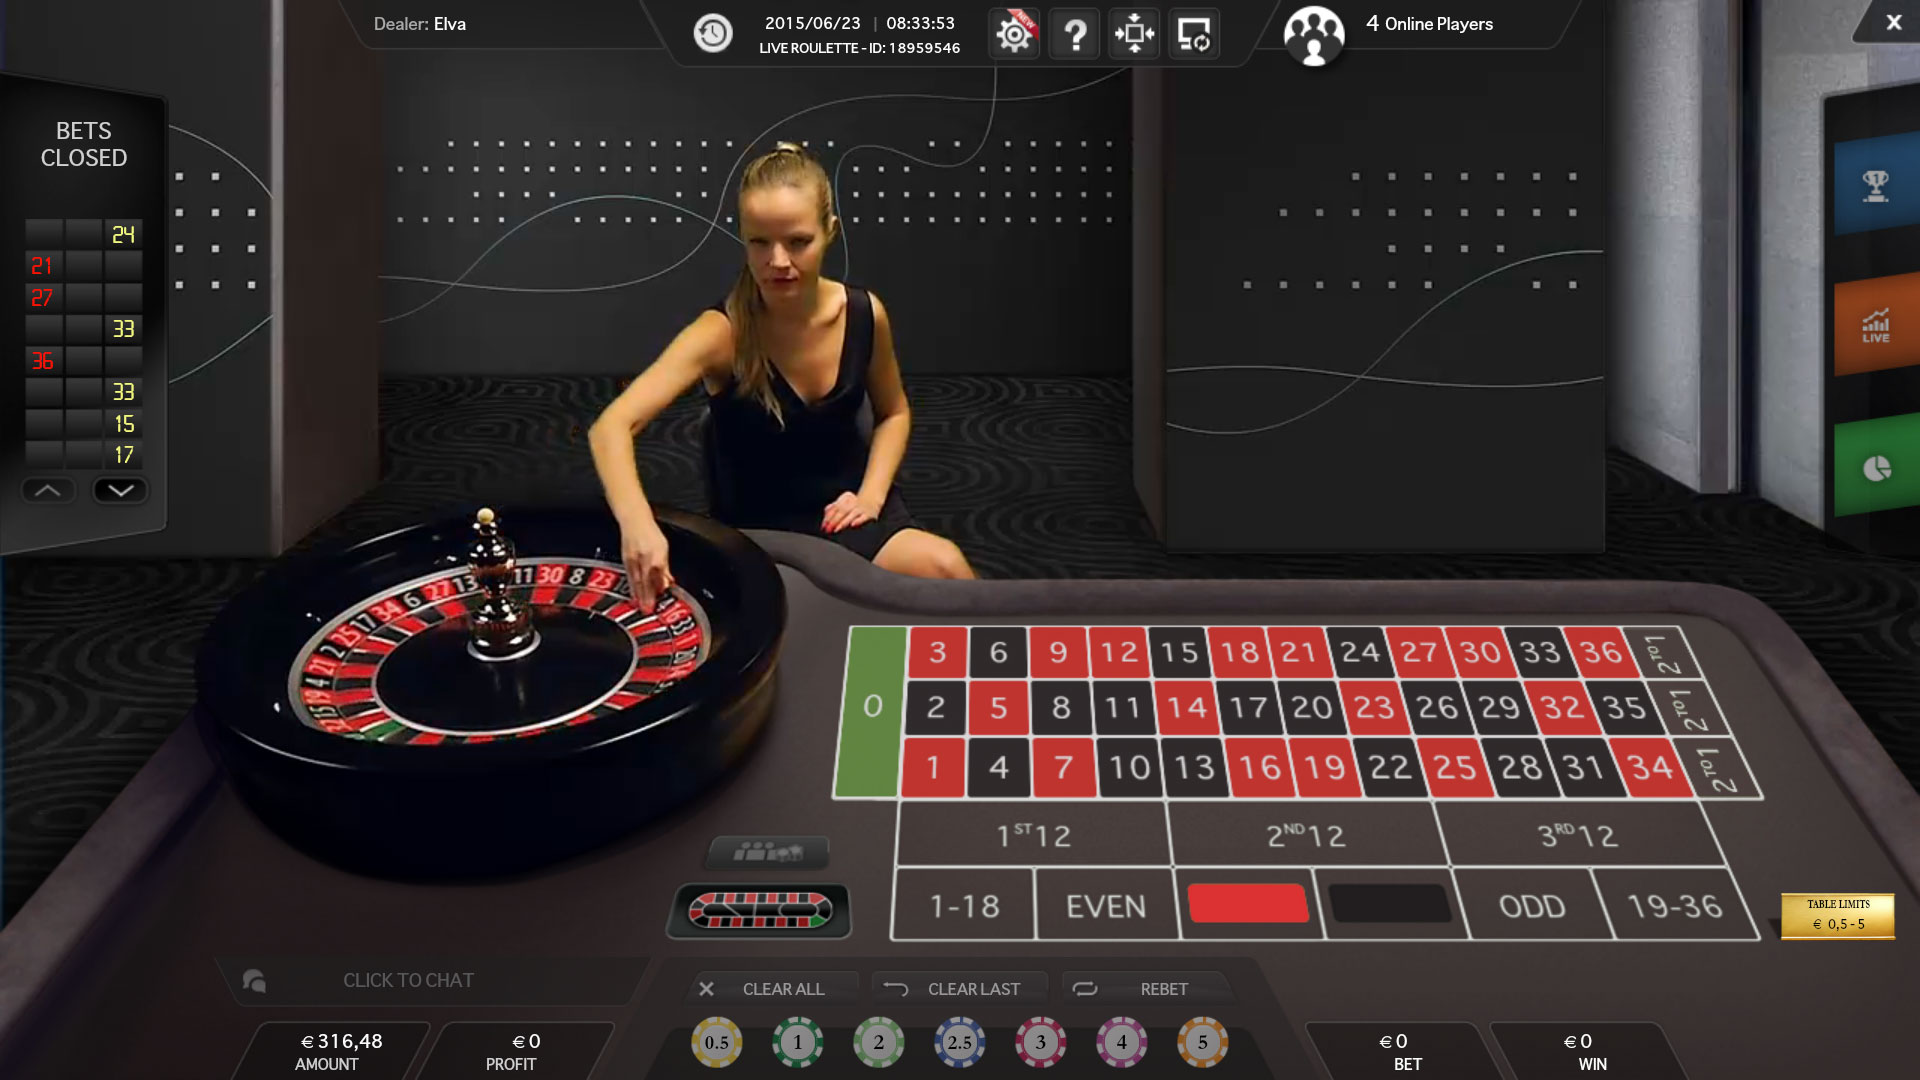 Casino roulette game online игры онлайн играть бесплатно карты дурак